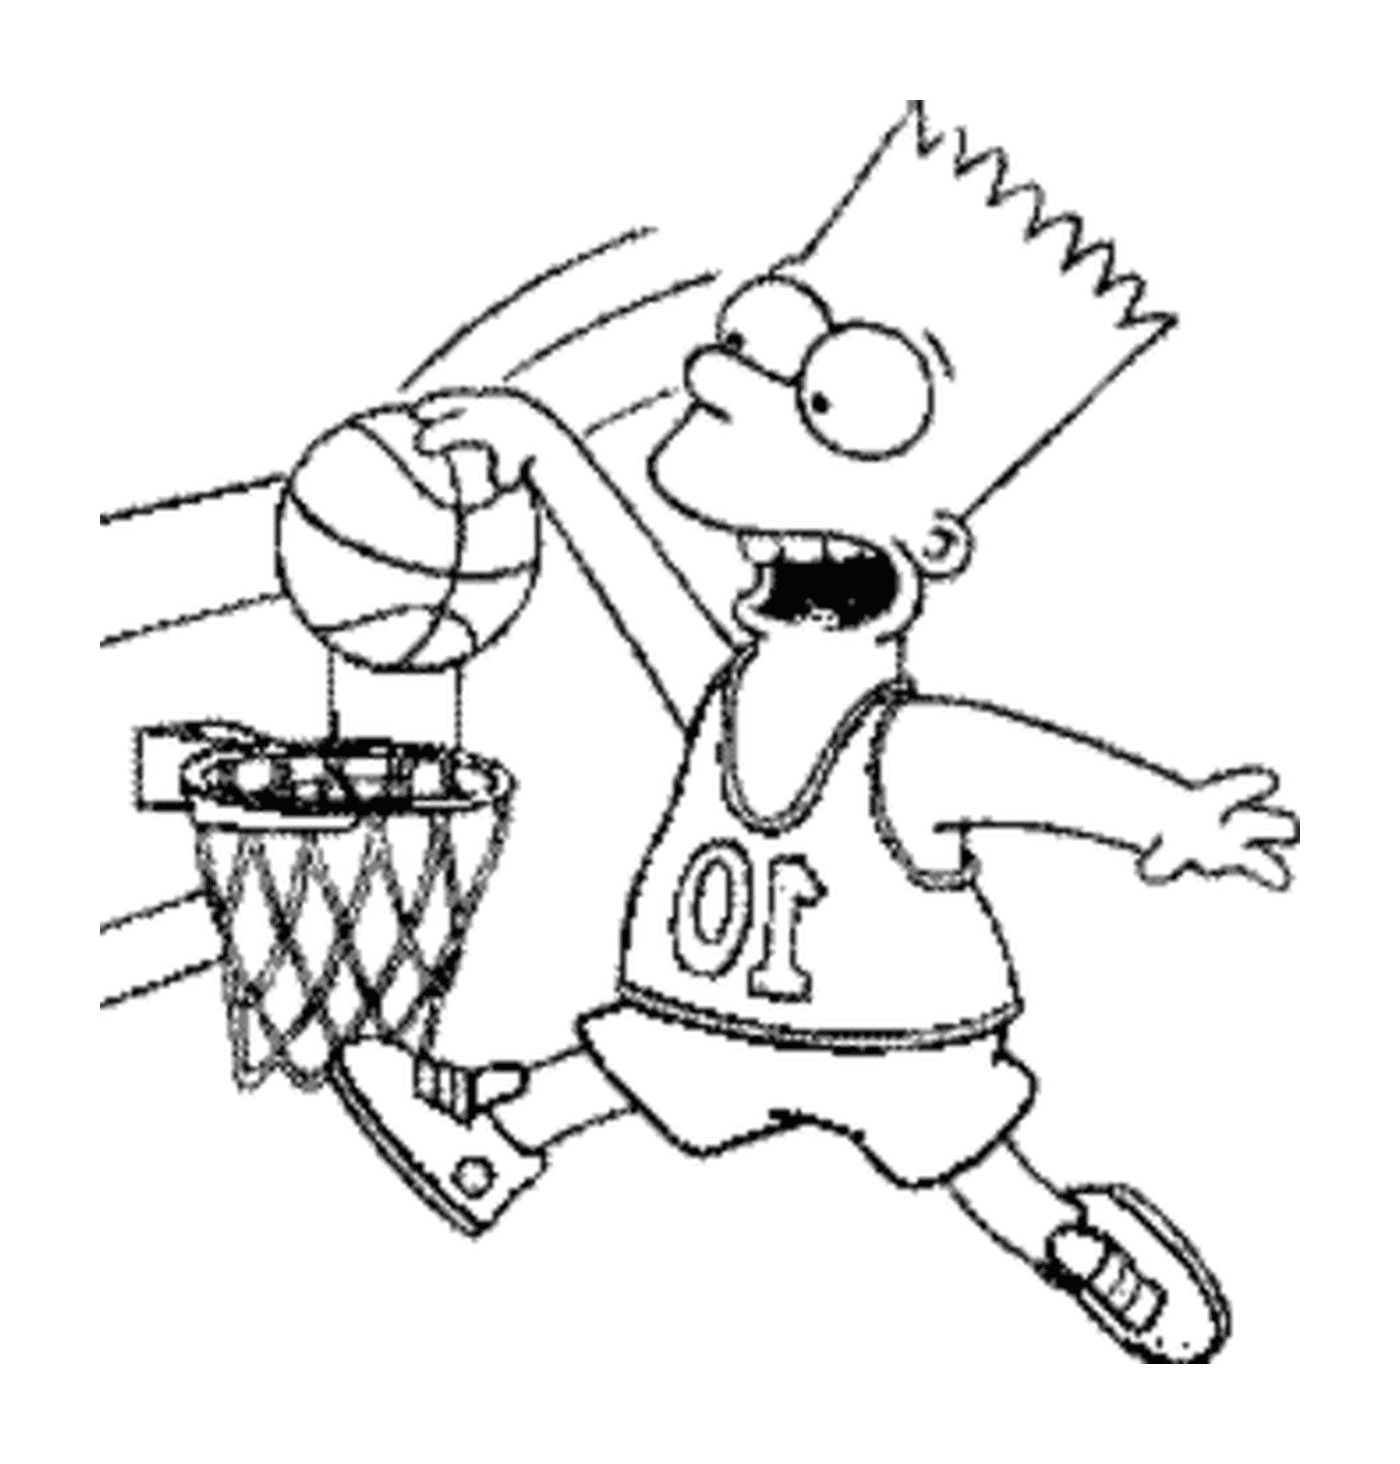  巴特打篮球 